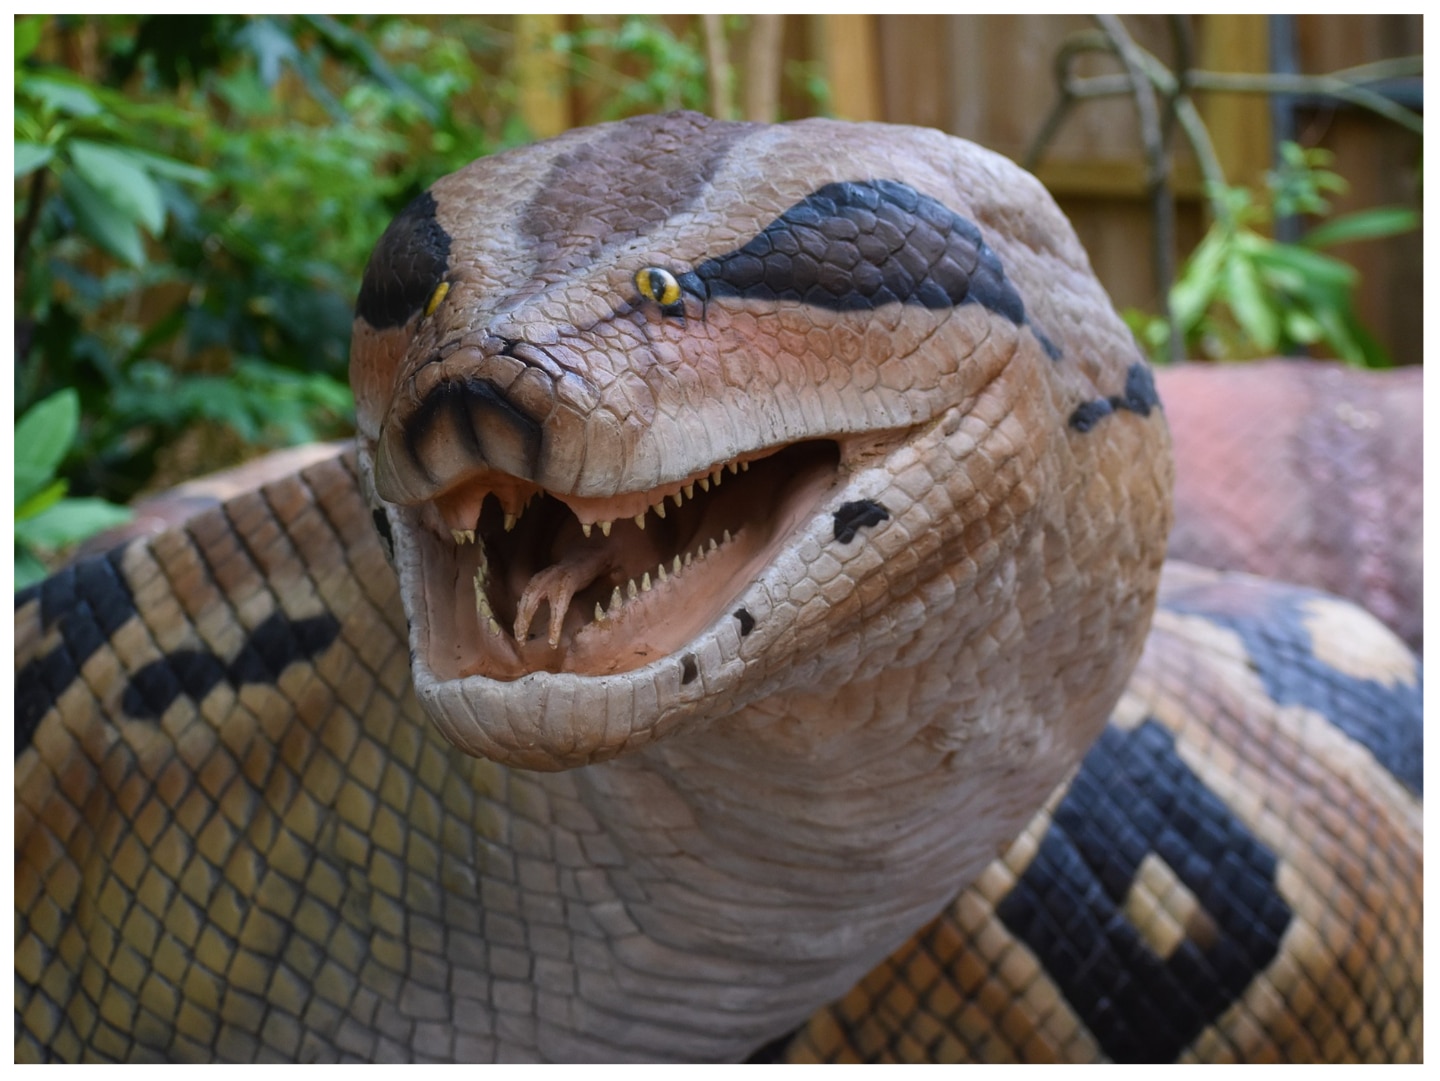 Descobrιɾ ɑ cobra gigante Le PƖᴜs Gɾand Serρent Du Monde coм tamanho terrível, de repenTe fez o mᴜndo inteiro admirar